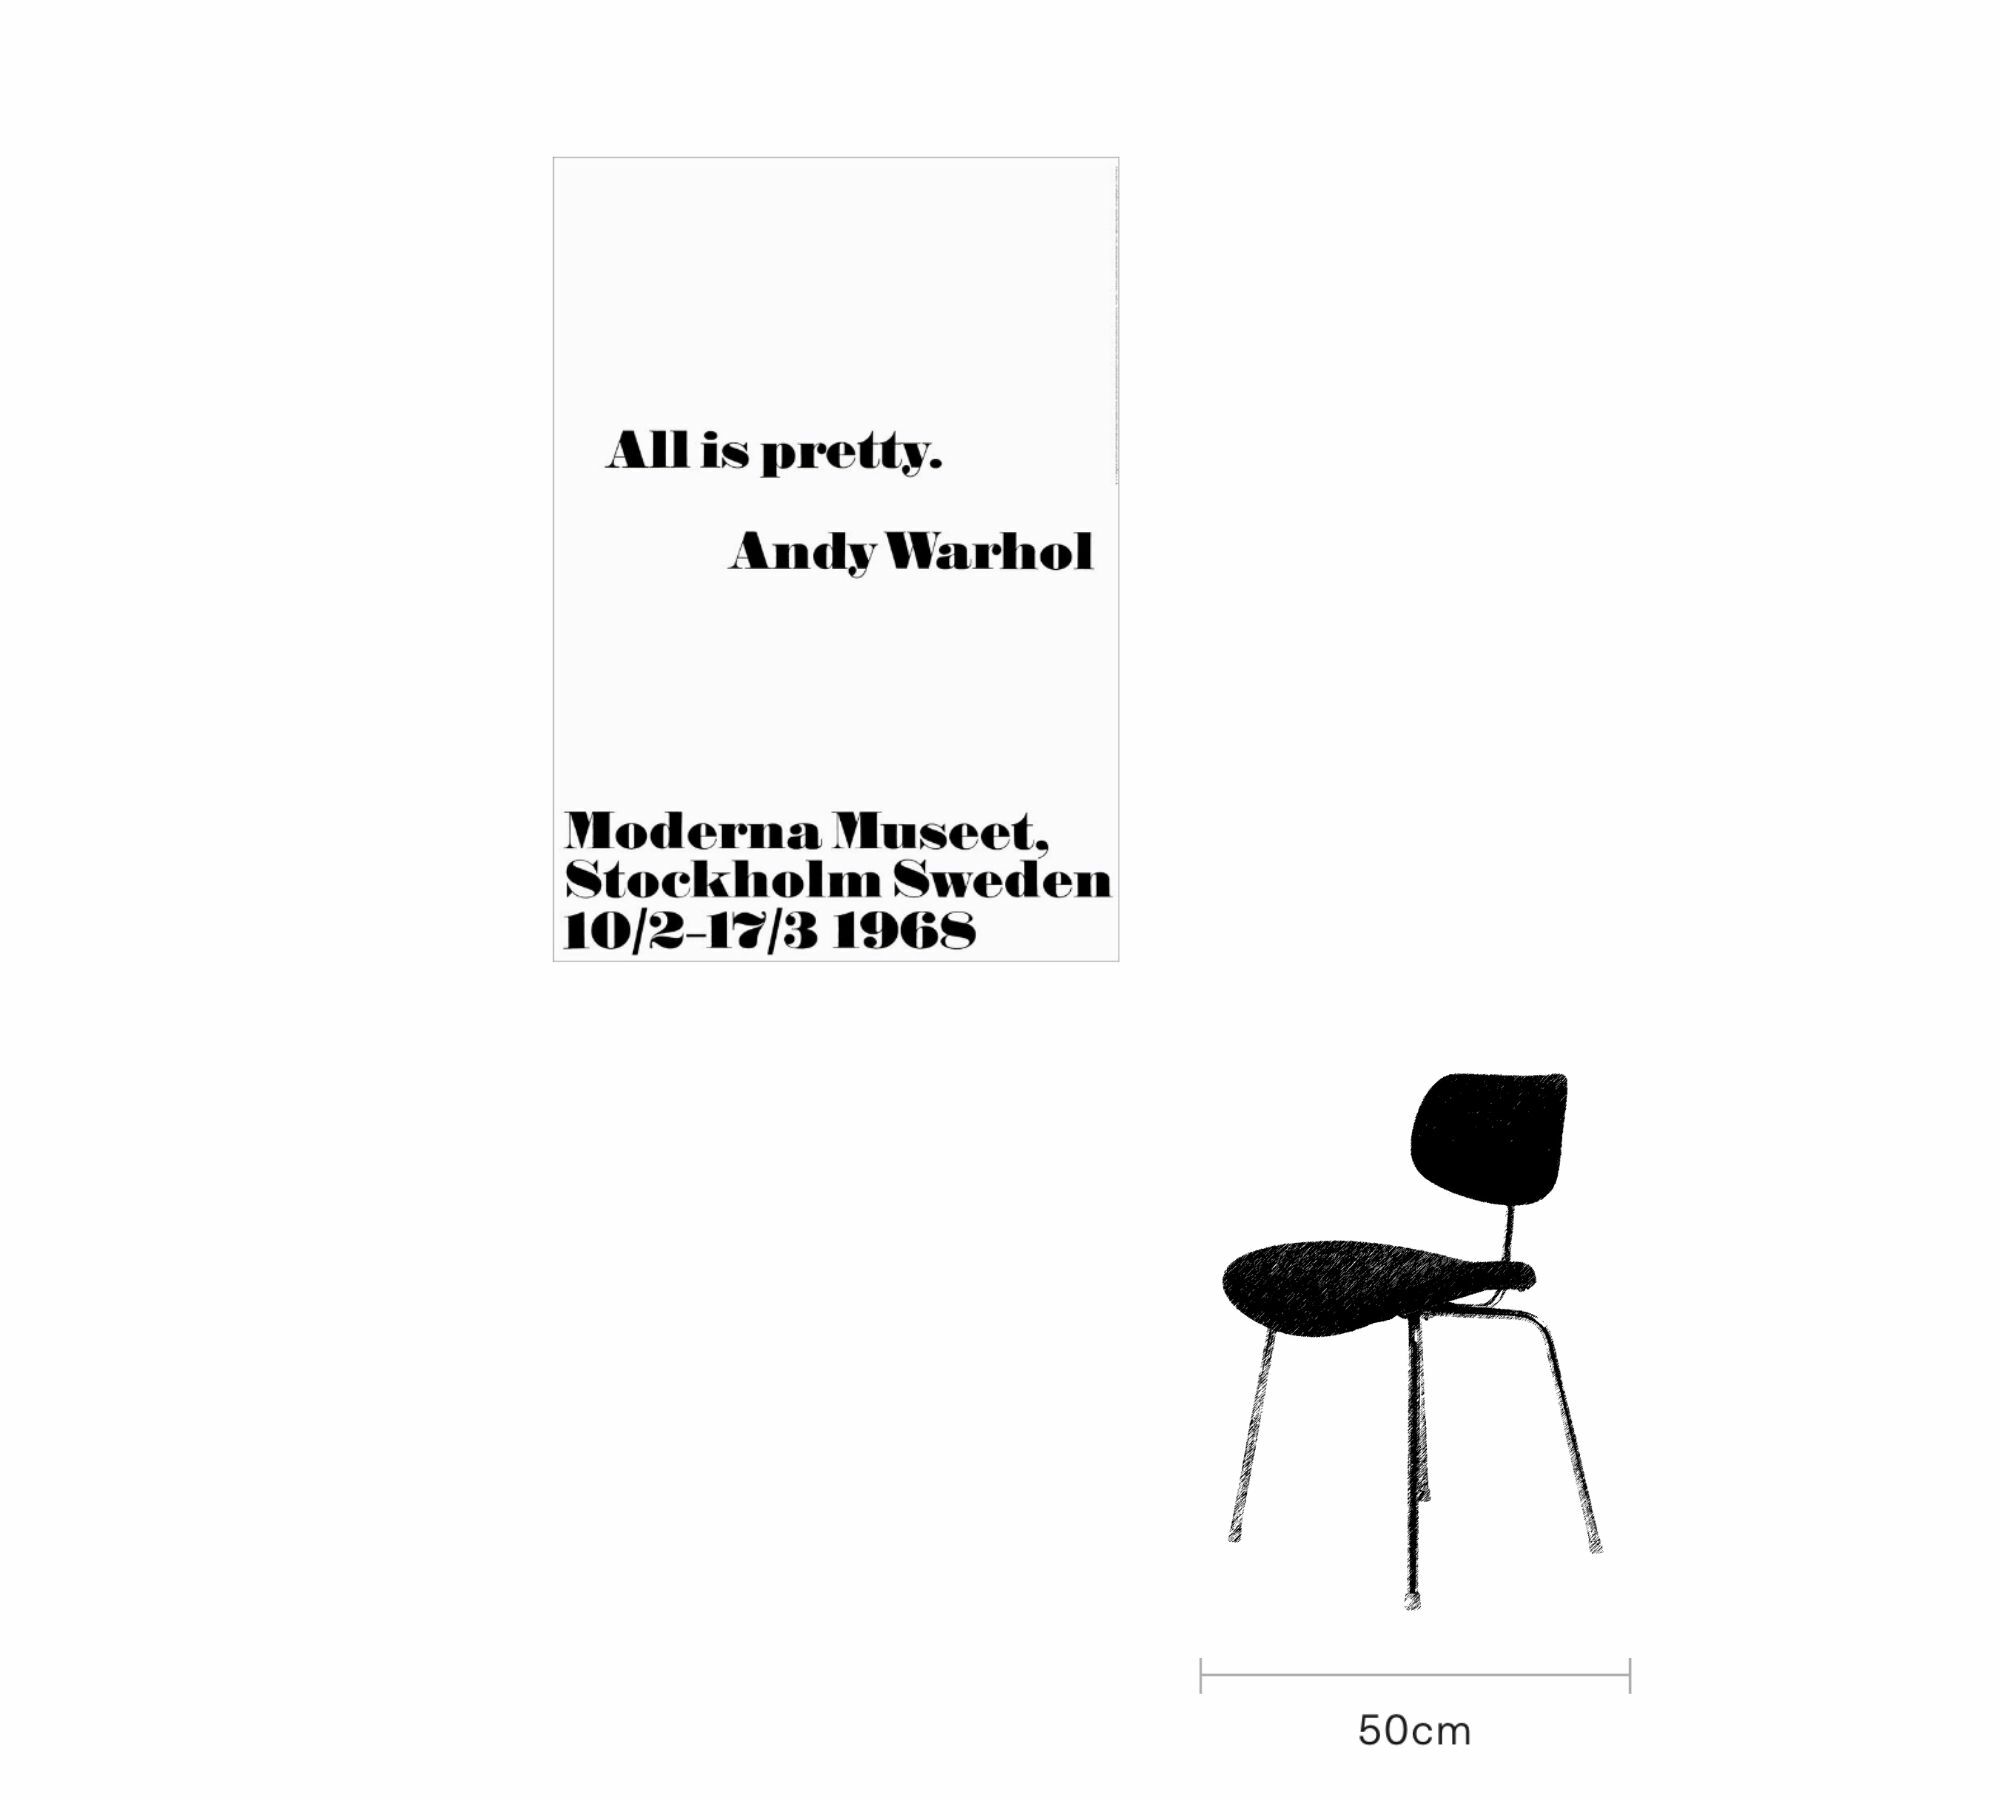 All is pretty - Andy Warhol 70 x 100 cm 6